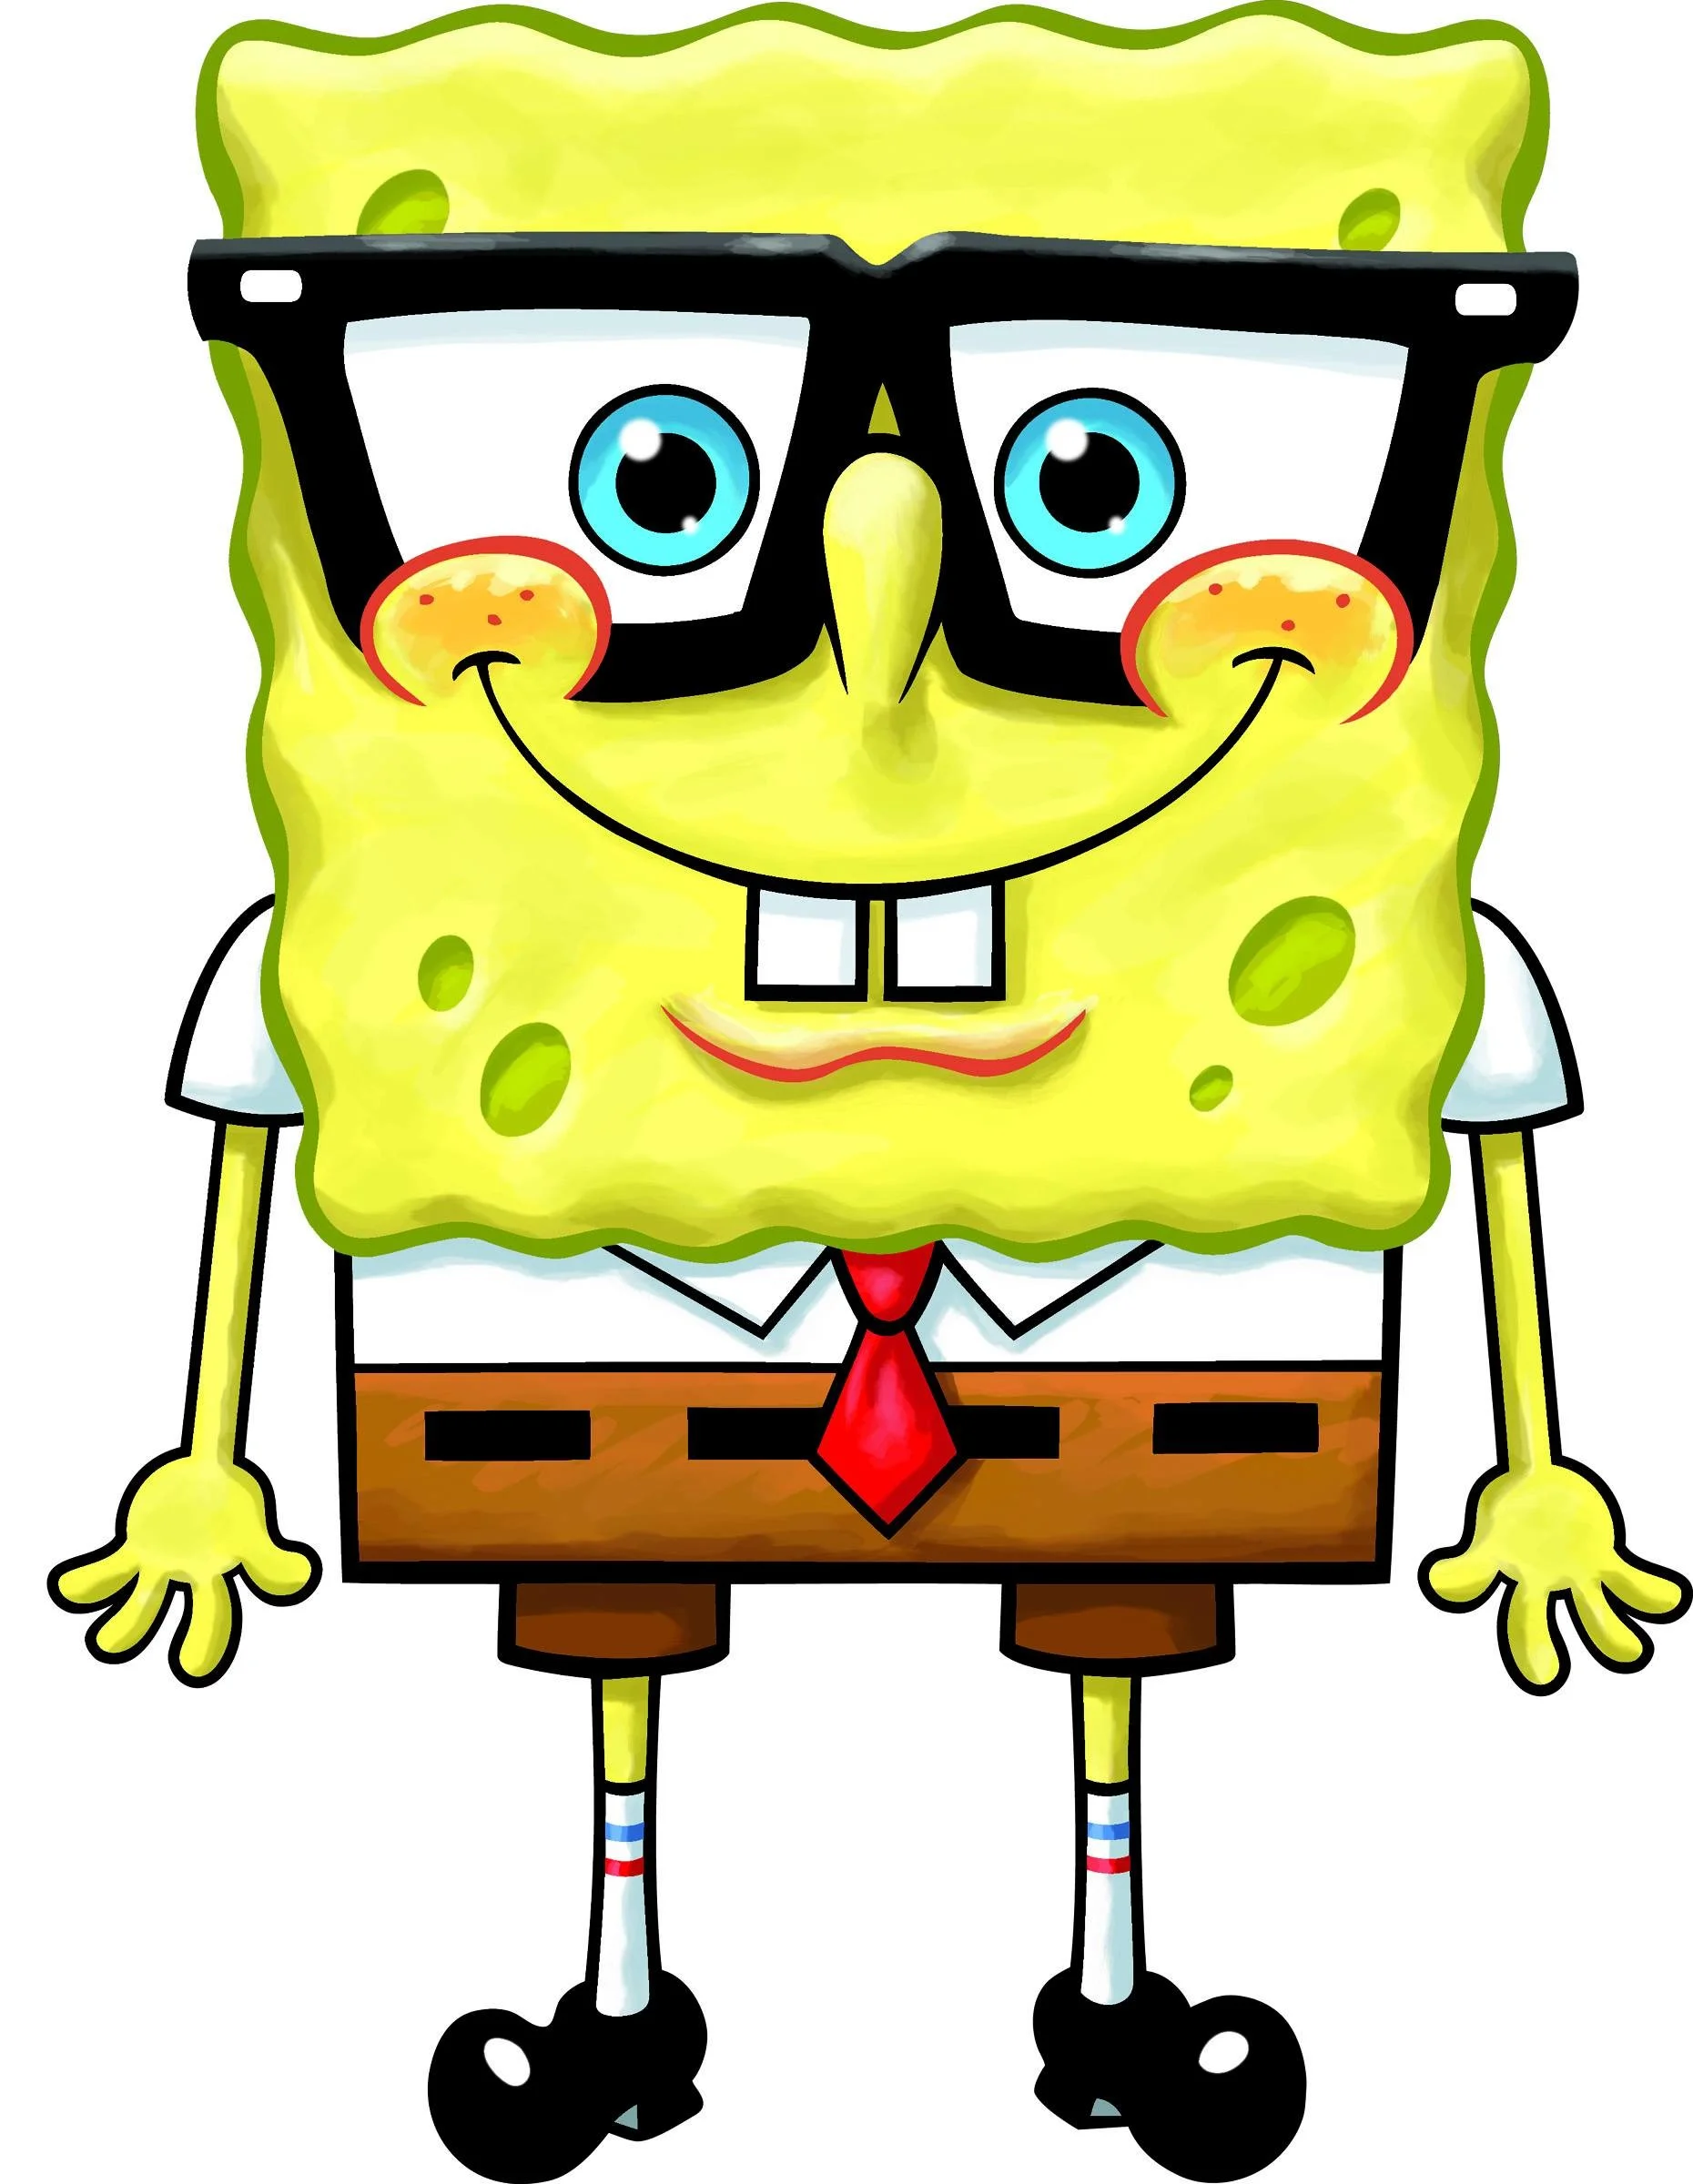 Spongebob Squarepants and Patrick wallpaper – spongebob-squarepants  Wallpaper | BG/Wallpaper/Pattern | Pinterest | Spongebob, Spongebob  squarepants and …